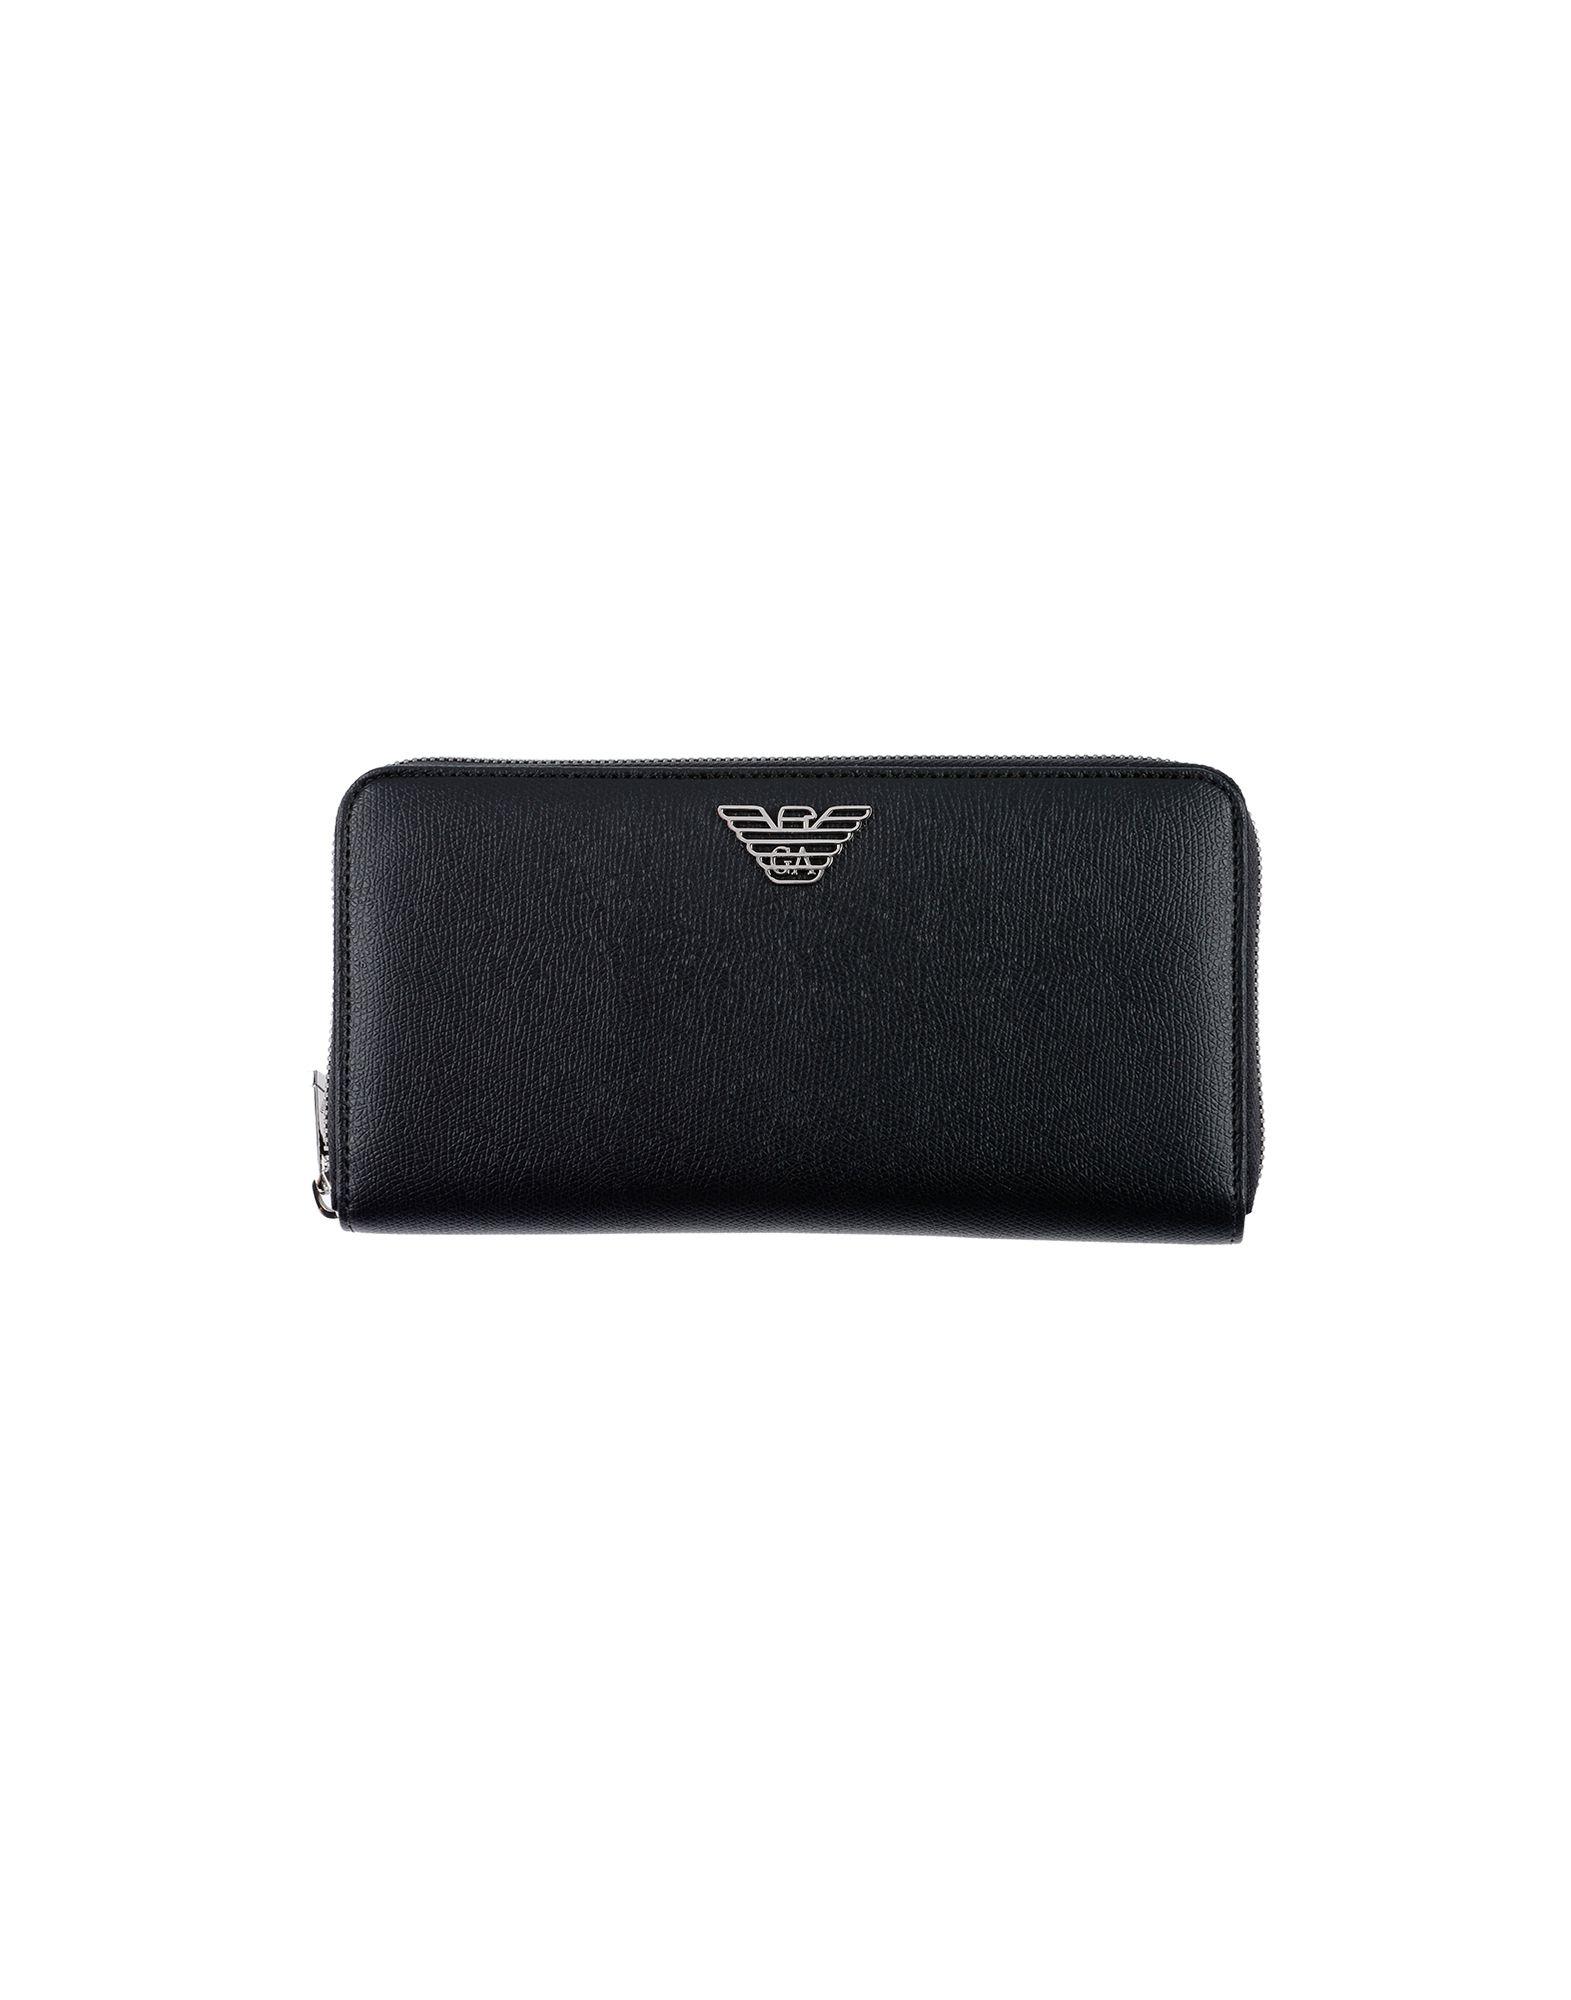 Emporio Armani Wallet in Black for Men - Lyst